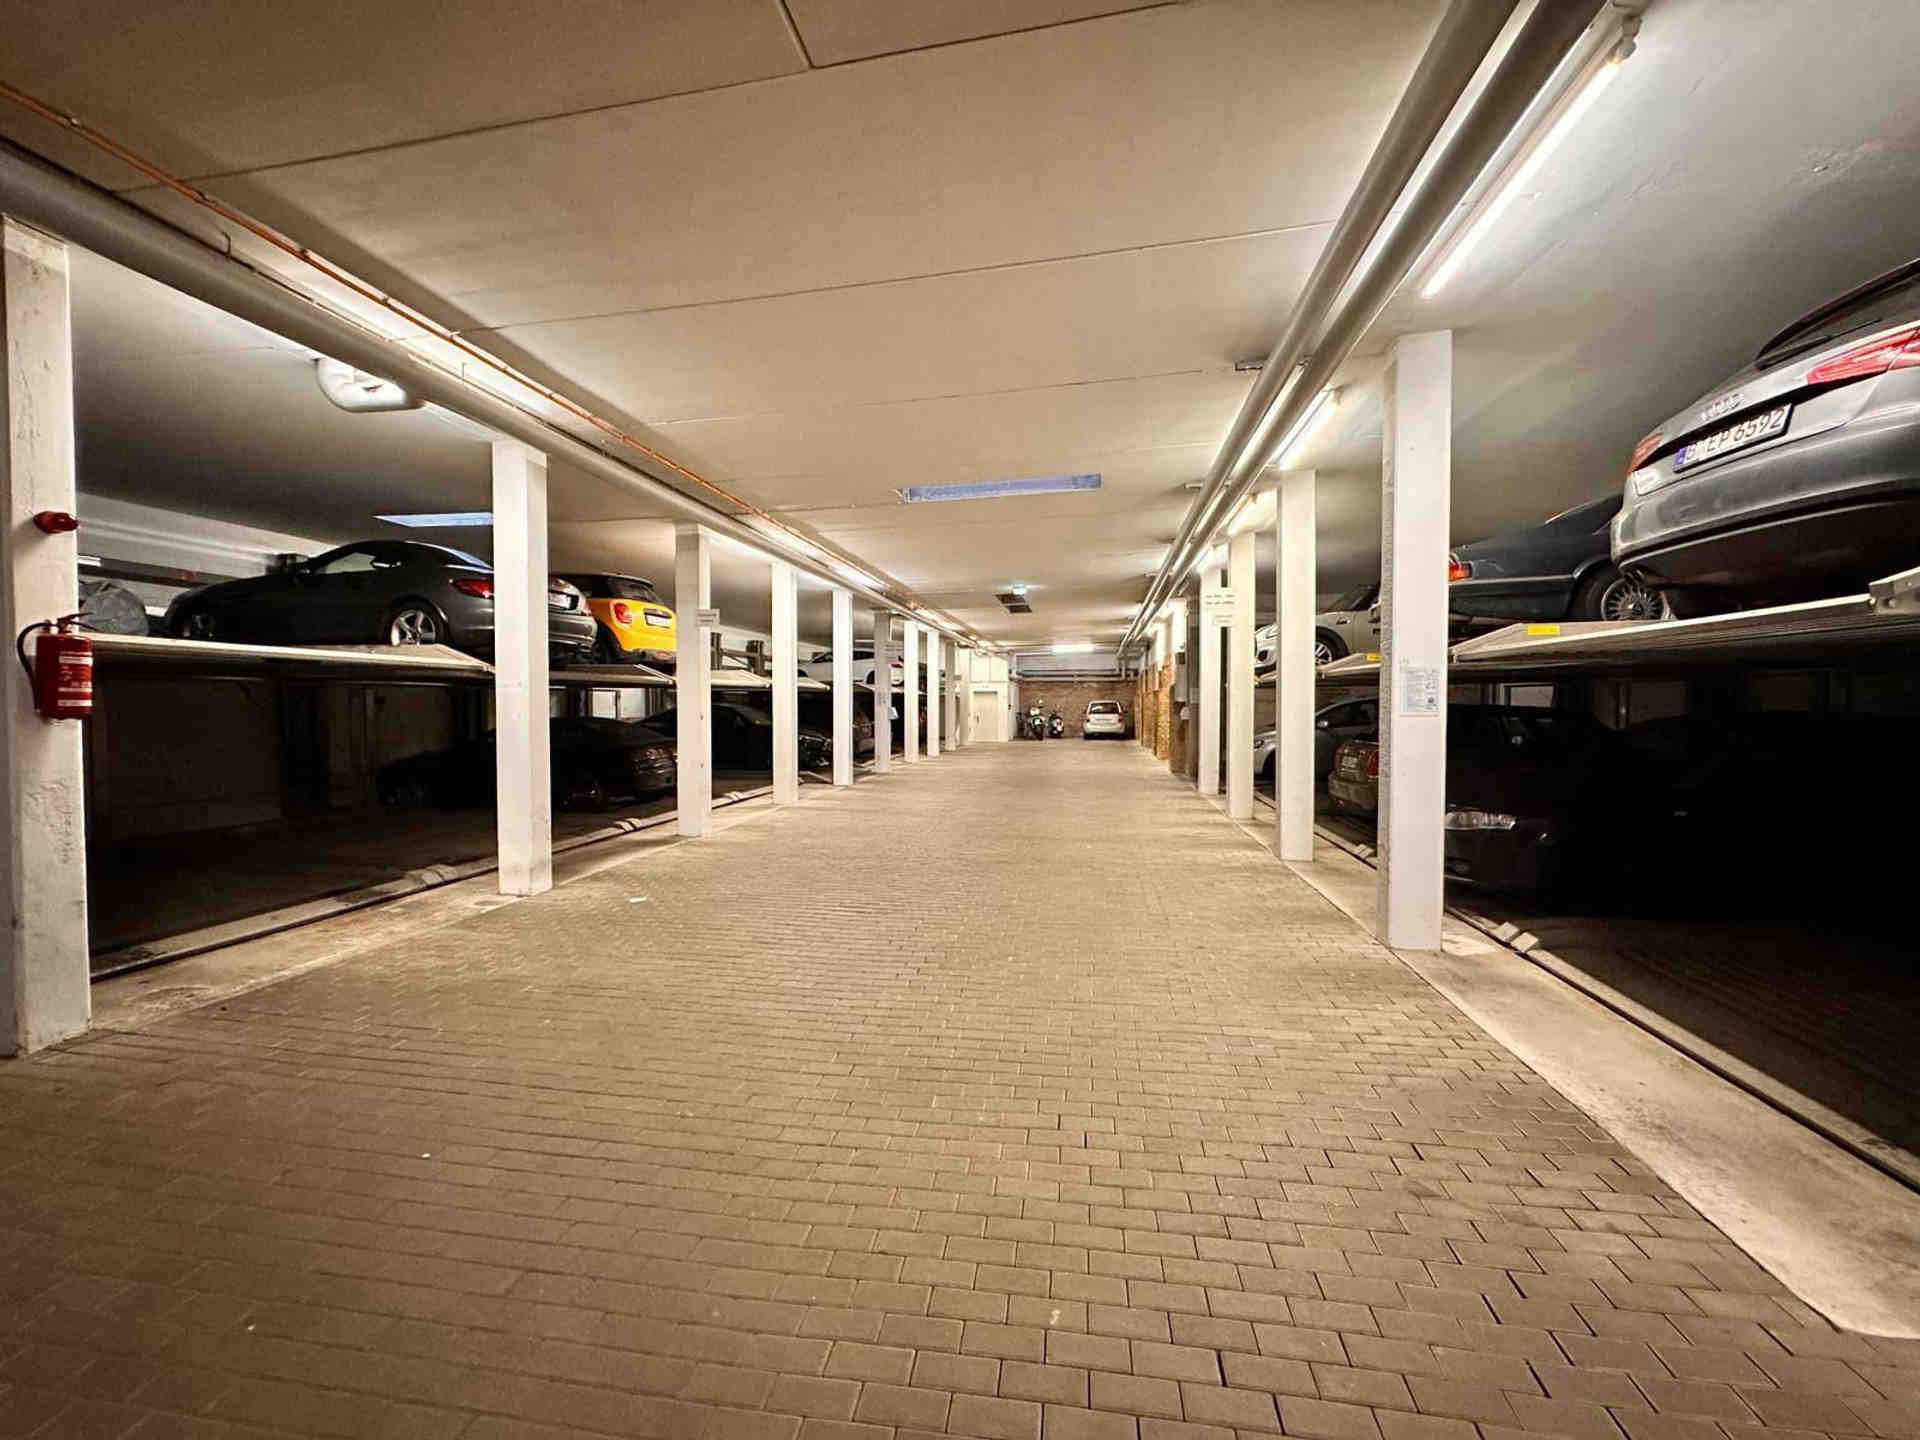 Secure underground high-tech parking near public transport - Warschauer Straße, 10243 Berlin - Photo 1 of 1